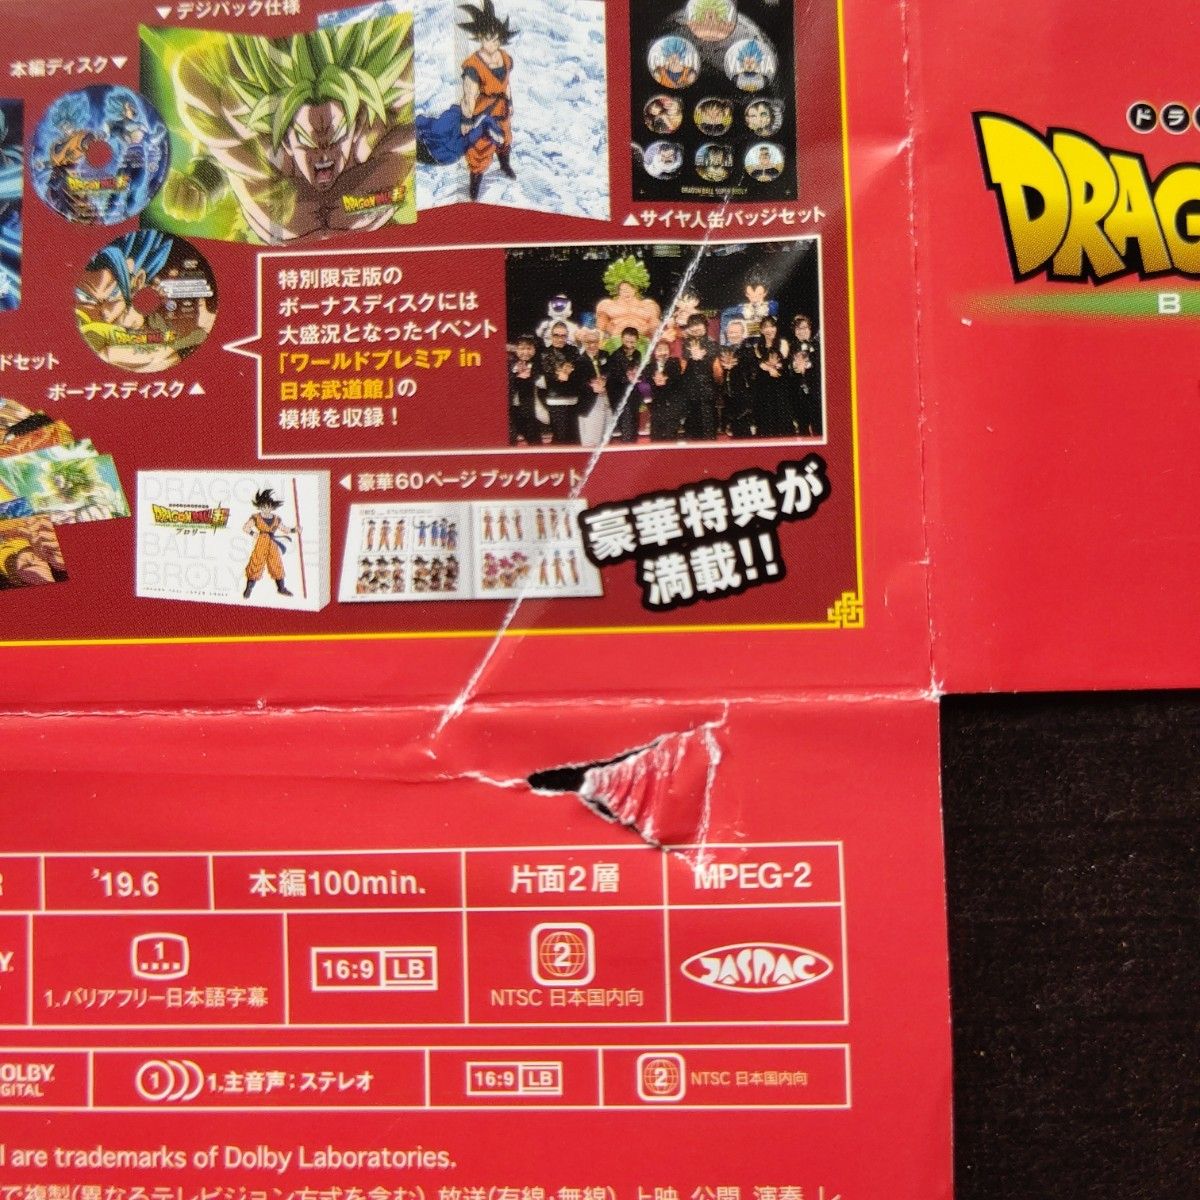 ドラゴンボール DVD 劇場版 ドラゴンボール超 ブロリー